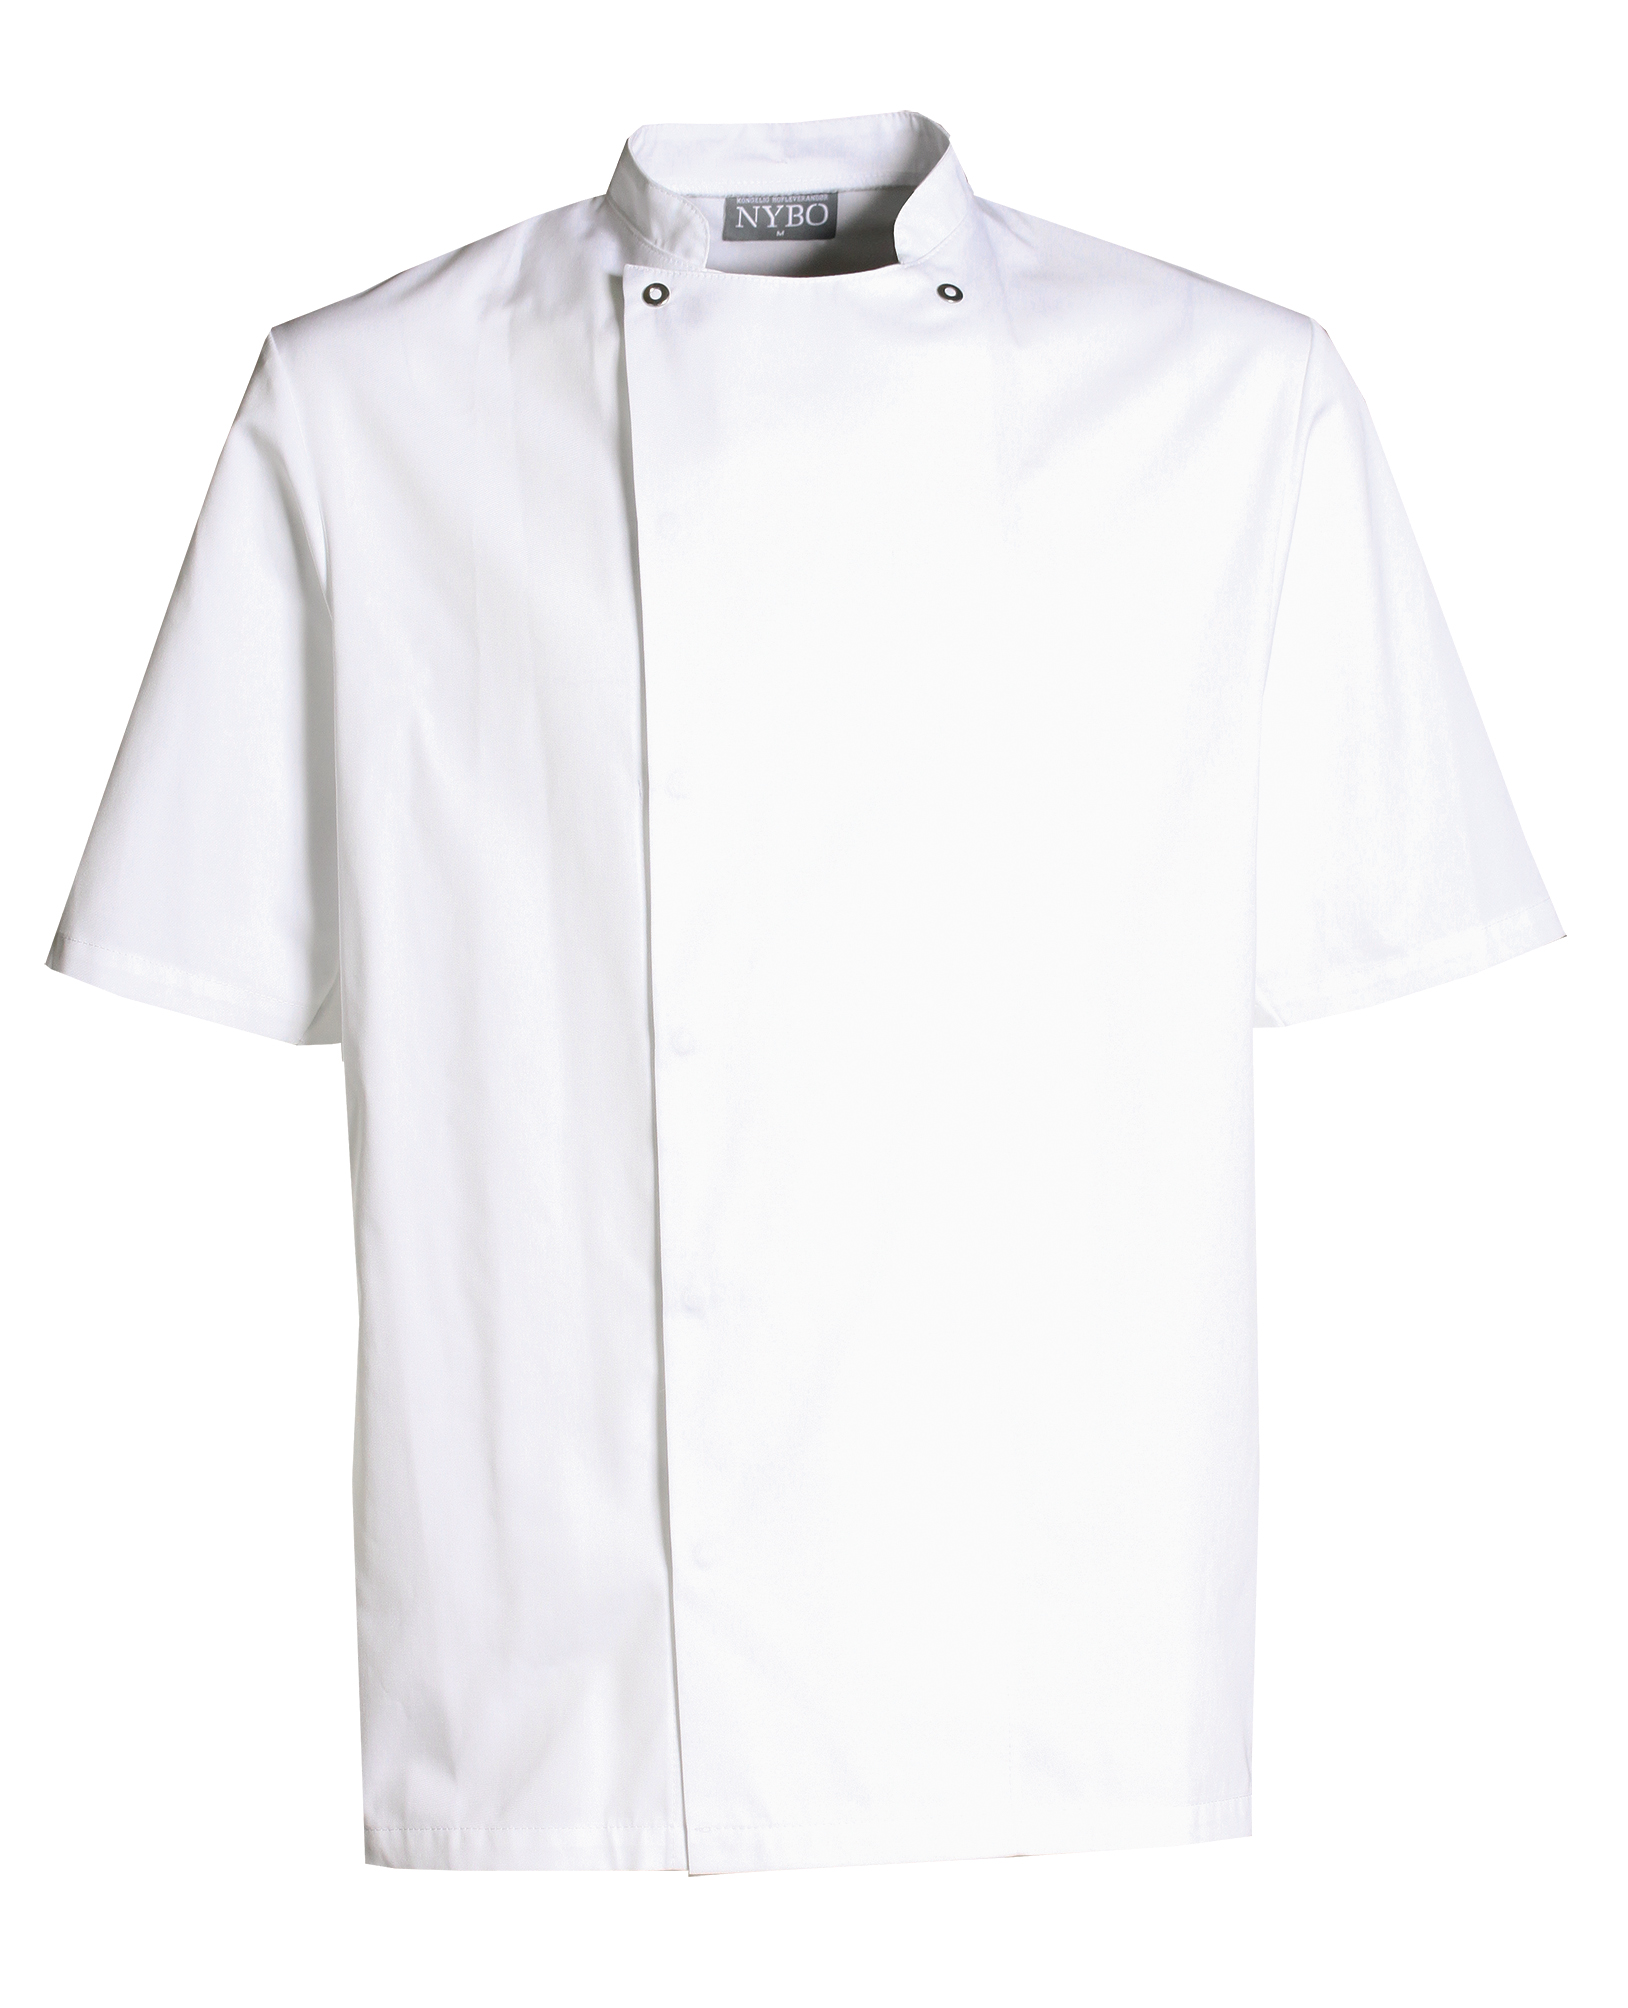 Weiß Klassische Kochjacke mit kurzen Ärmeln, Take away (5010159)